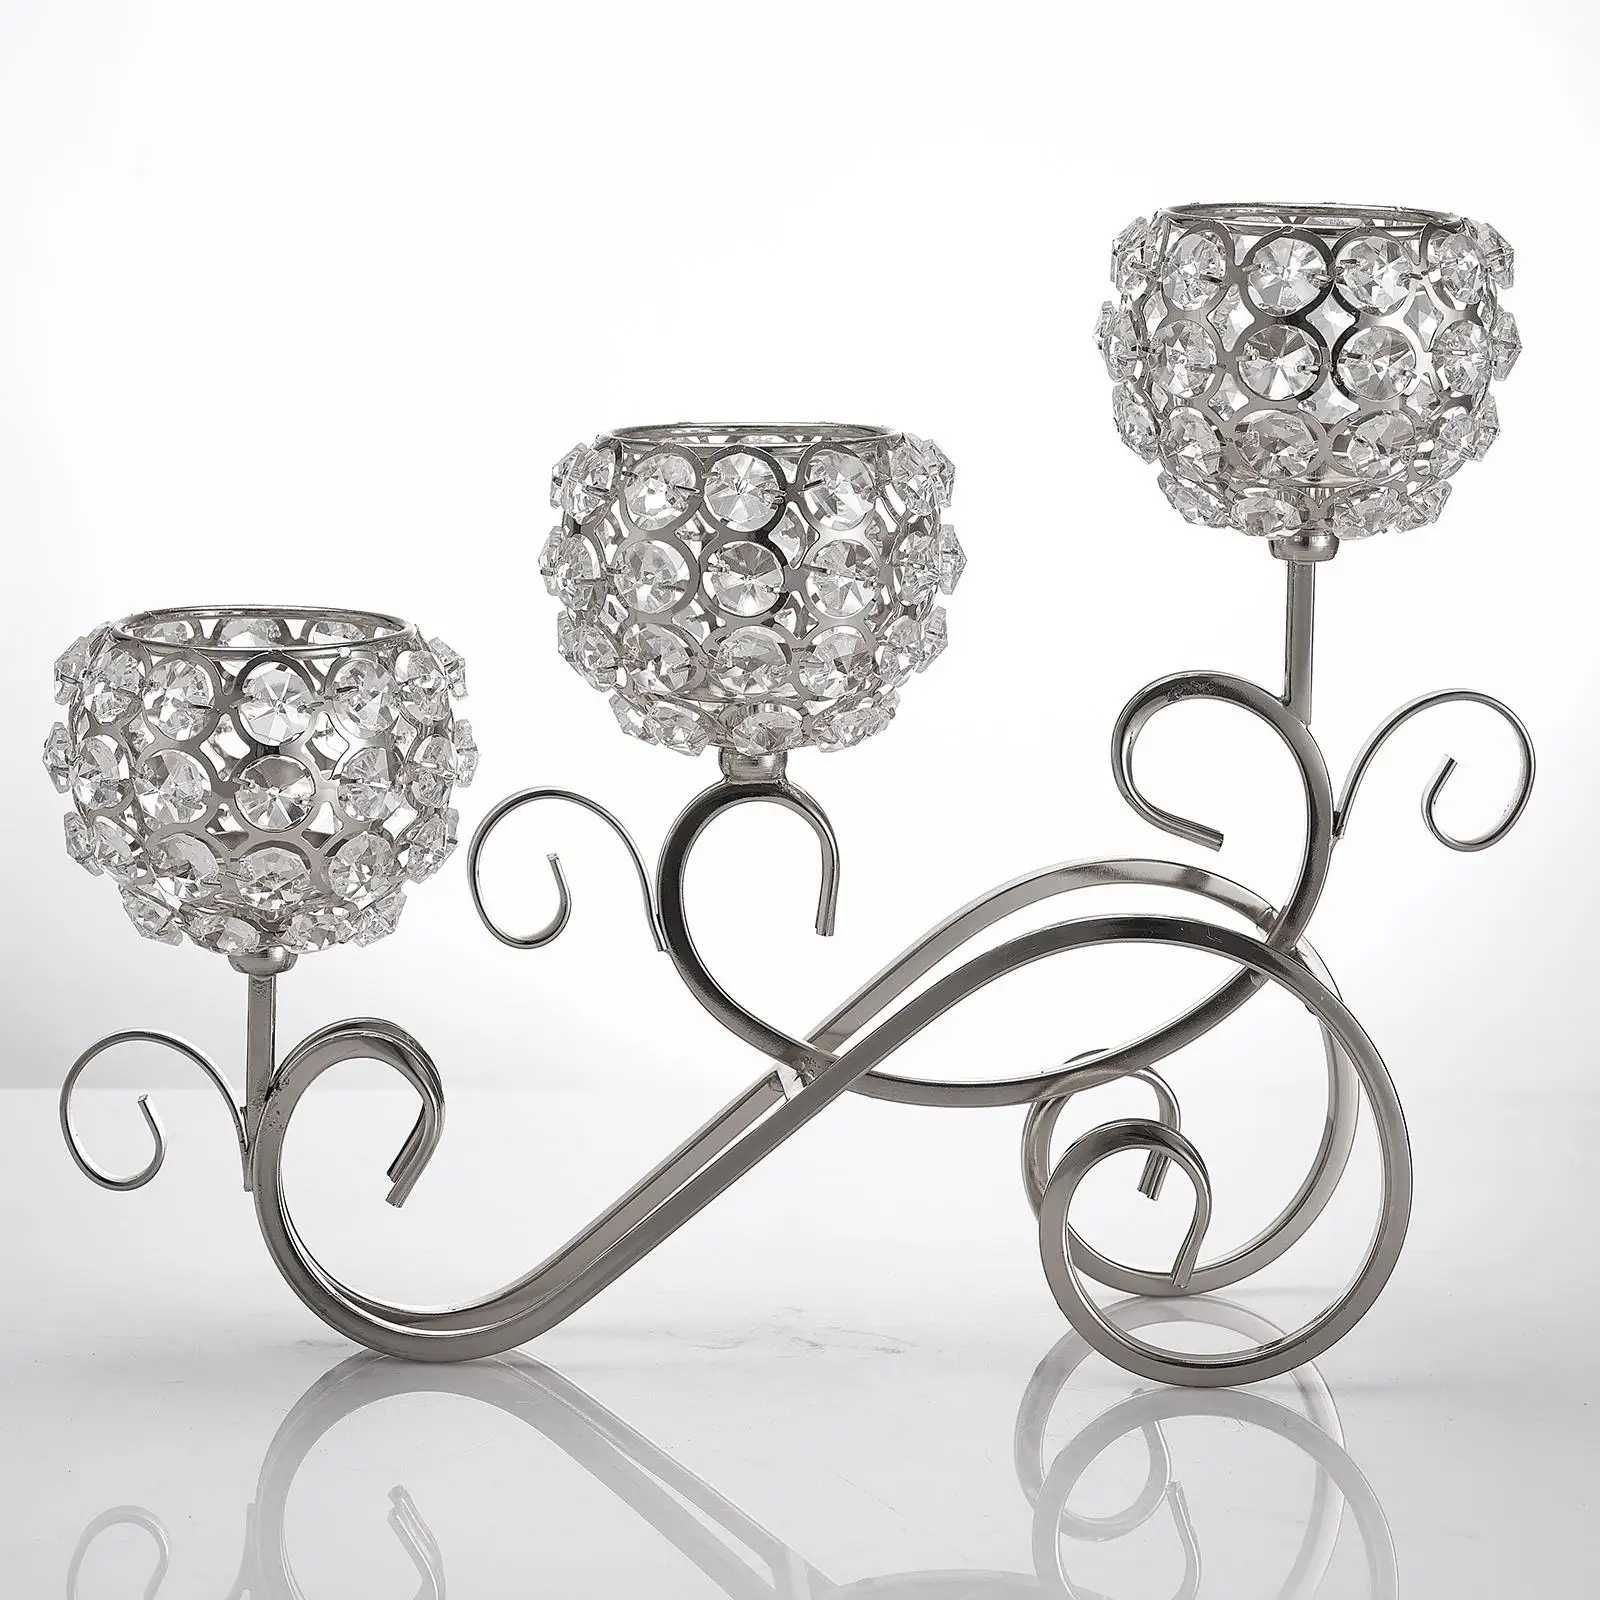 Crystal Holder Sparking Candelabra Elegant Centerpiece Cabinet